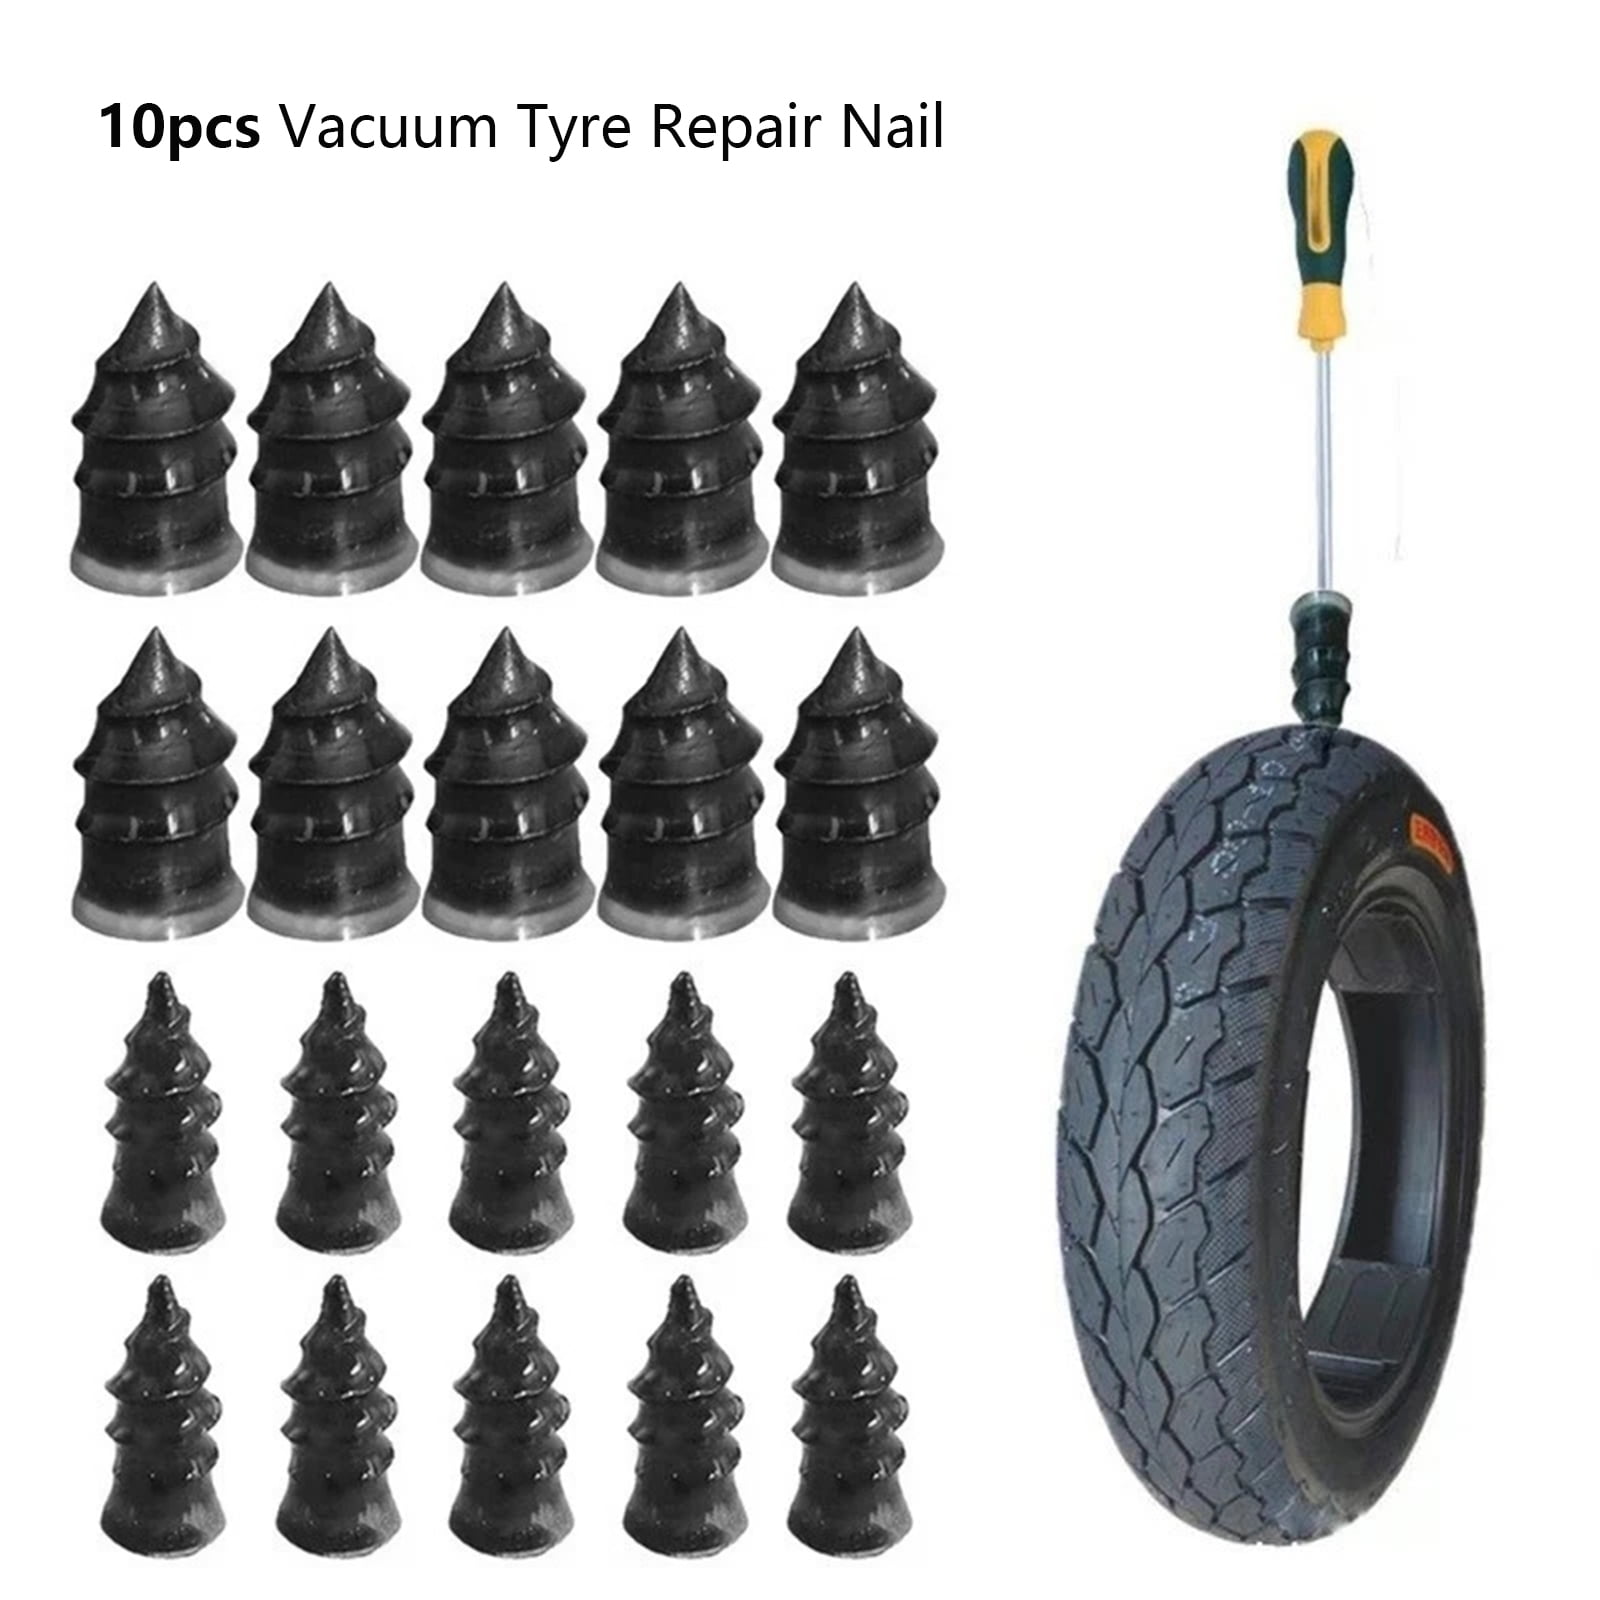 10Pcs Tubeless Tyre Repair Rubber Nails Vacuum Tyre Repair Nail For Motorcycle 